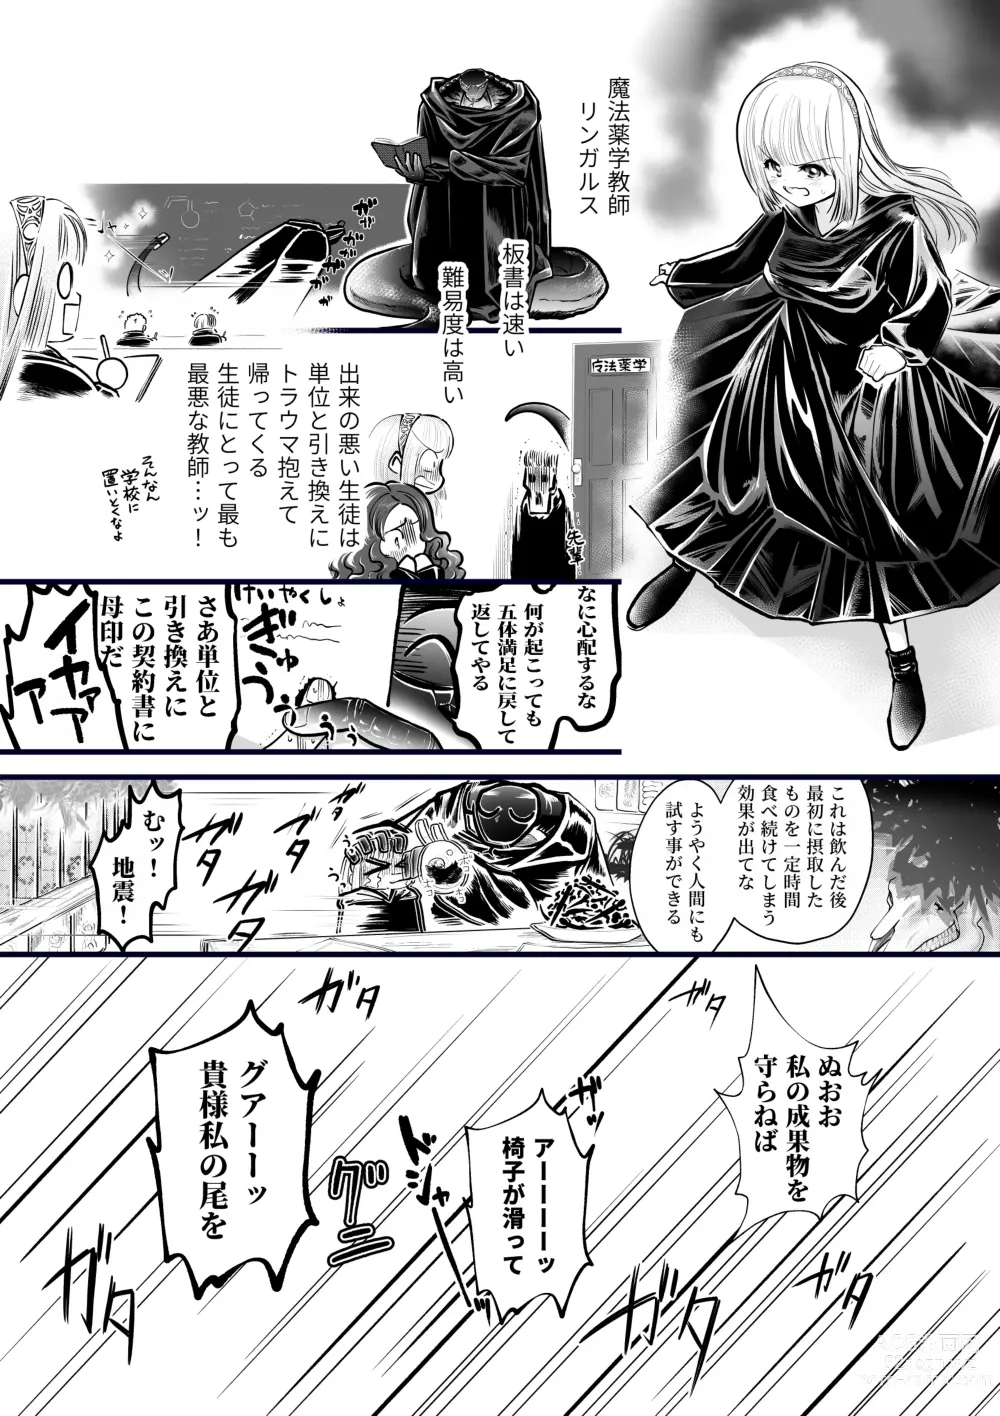 Page 4 of doujinshi Dakatsu no Gotoku Osoreteita Sensei to Kazukazu no Ero Happening ni Mimawarete Kindan no Kankaku Shadan Otoshiana Kouishou Chiryou